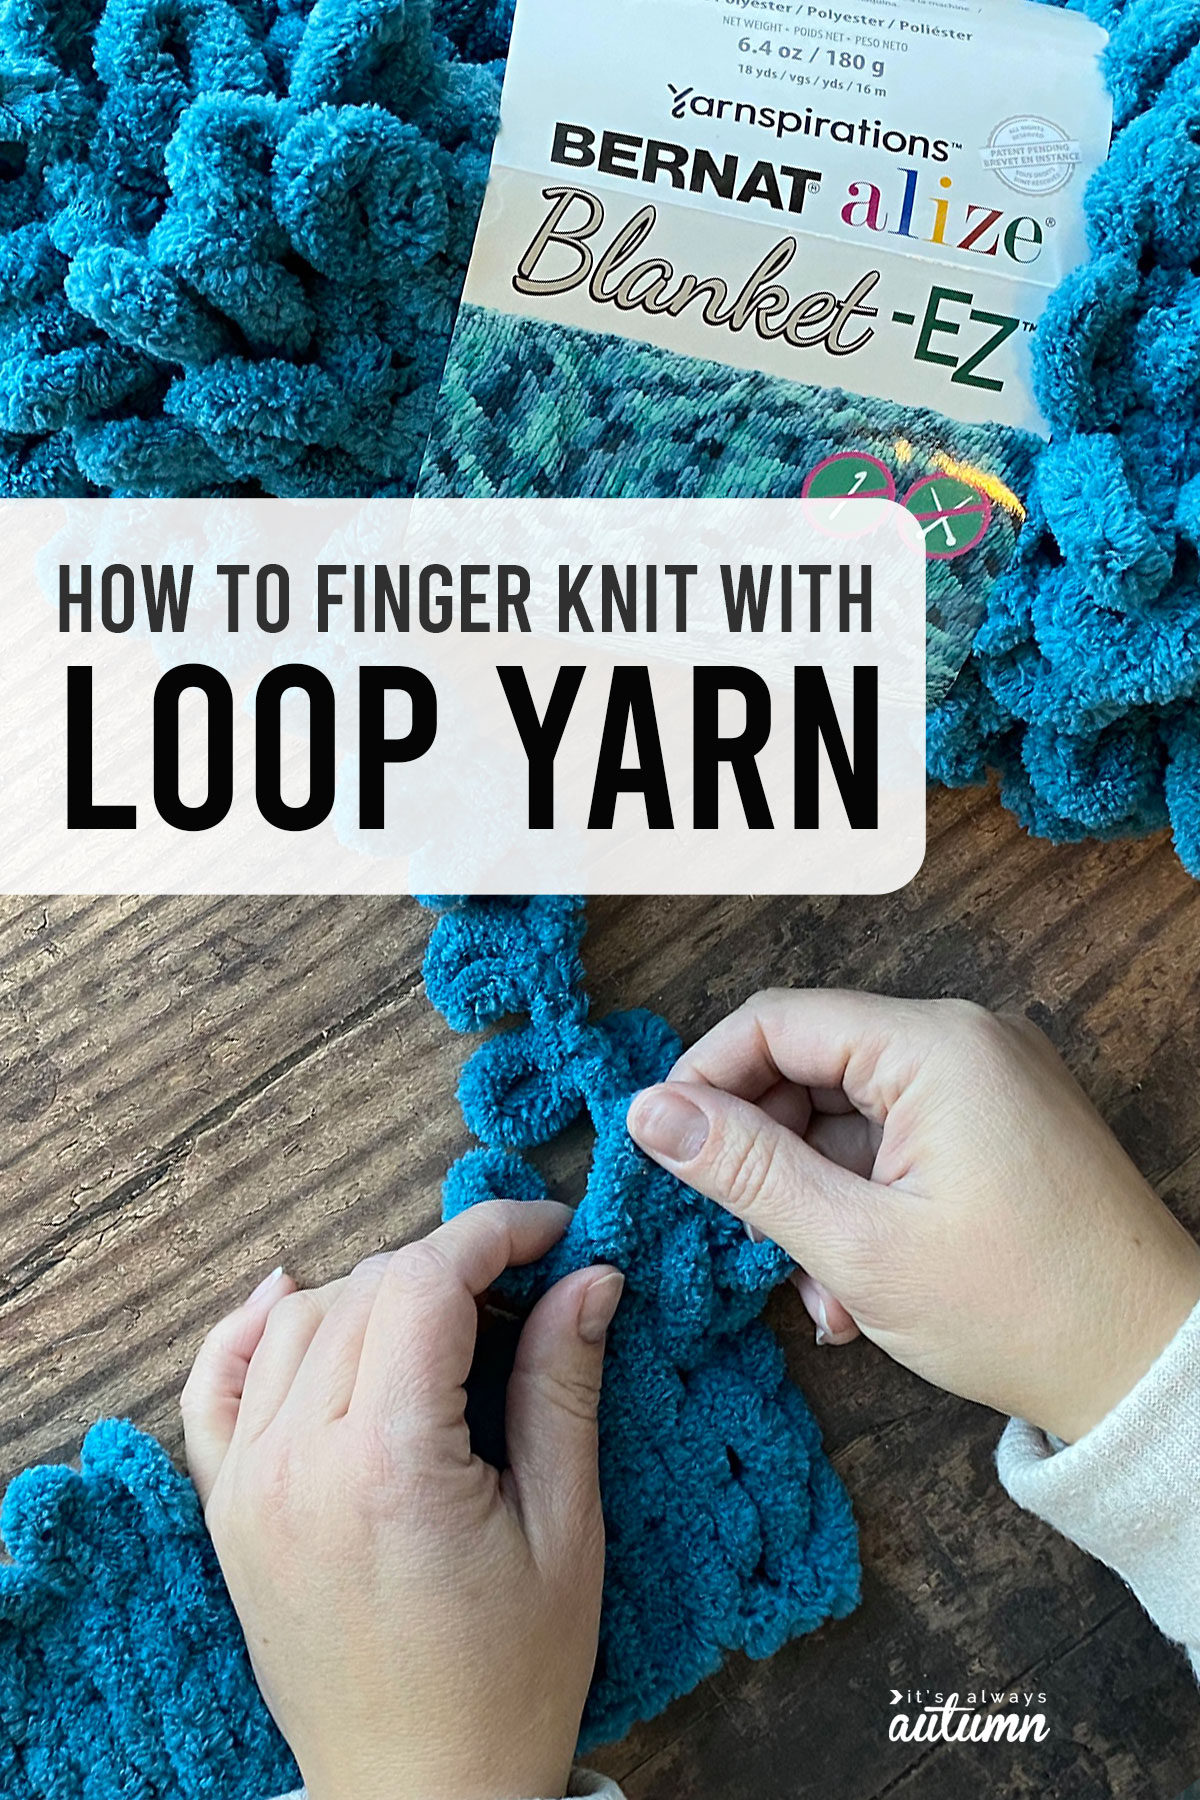 Loops & Threads Faux Fur Yarn - Ivory - 56 yd